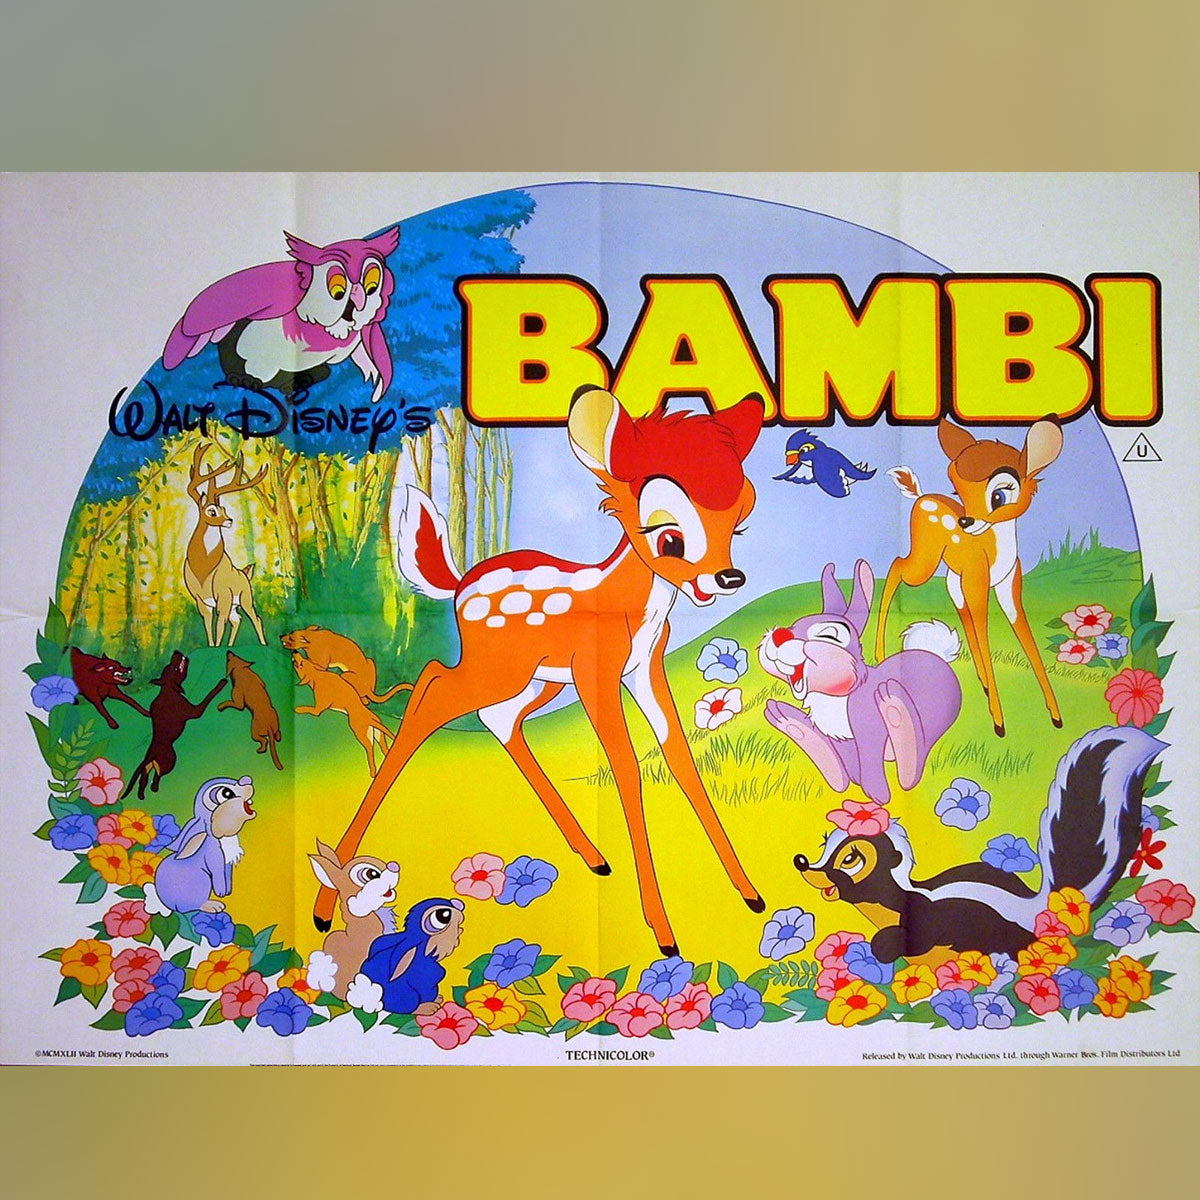 Bambi (R1982)